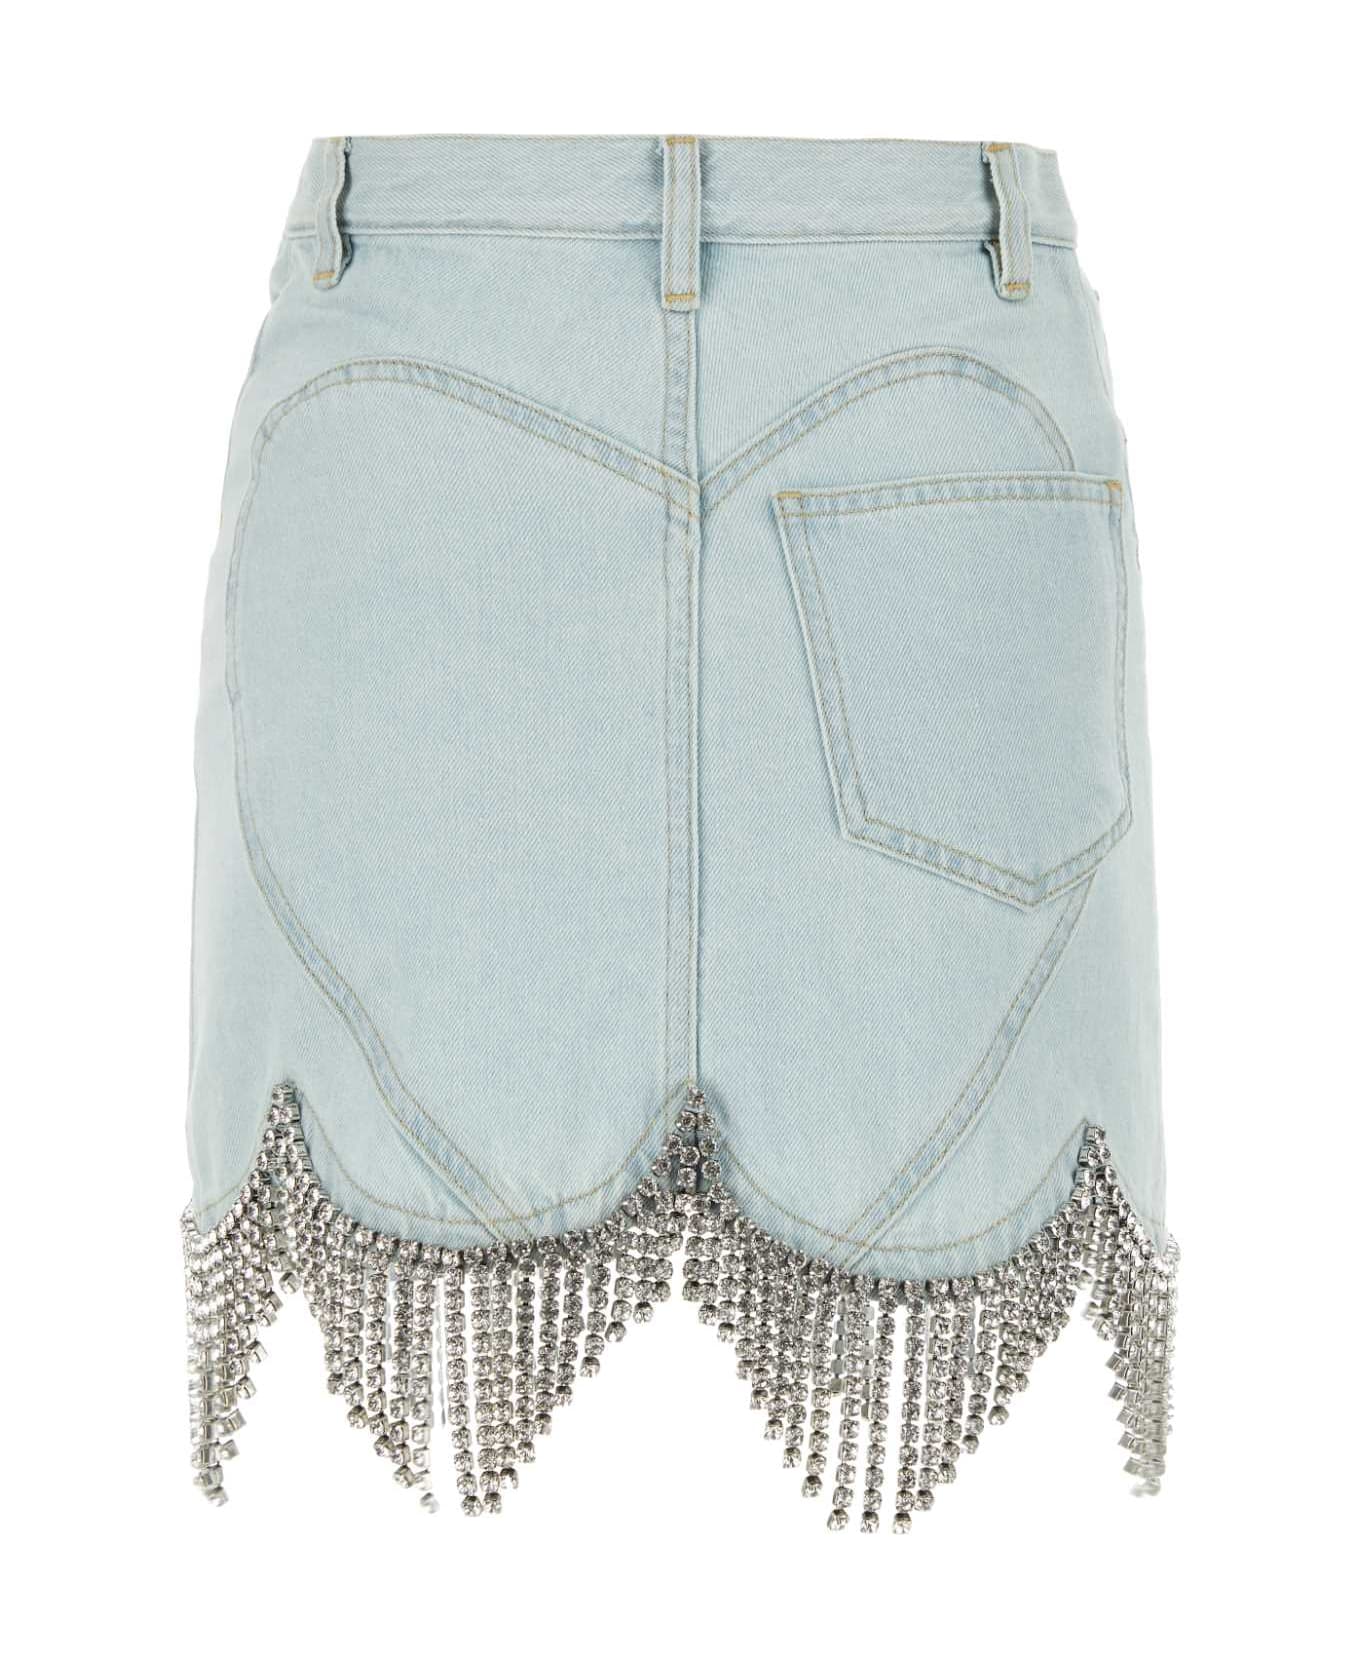 AREA Light-blue Denim Mini Skirt - PALEBLUE ショートパンツ